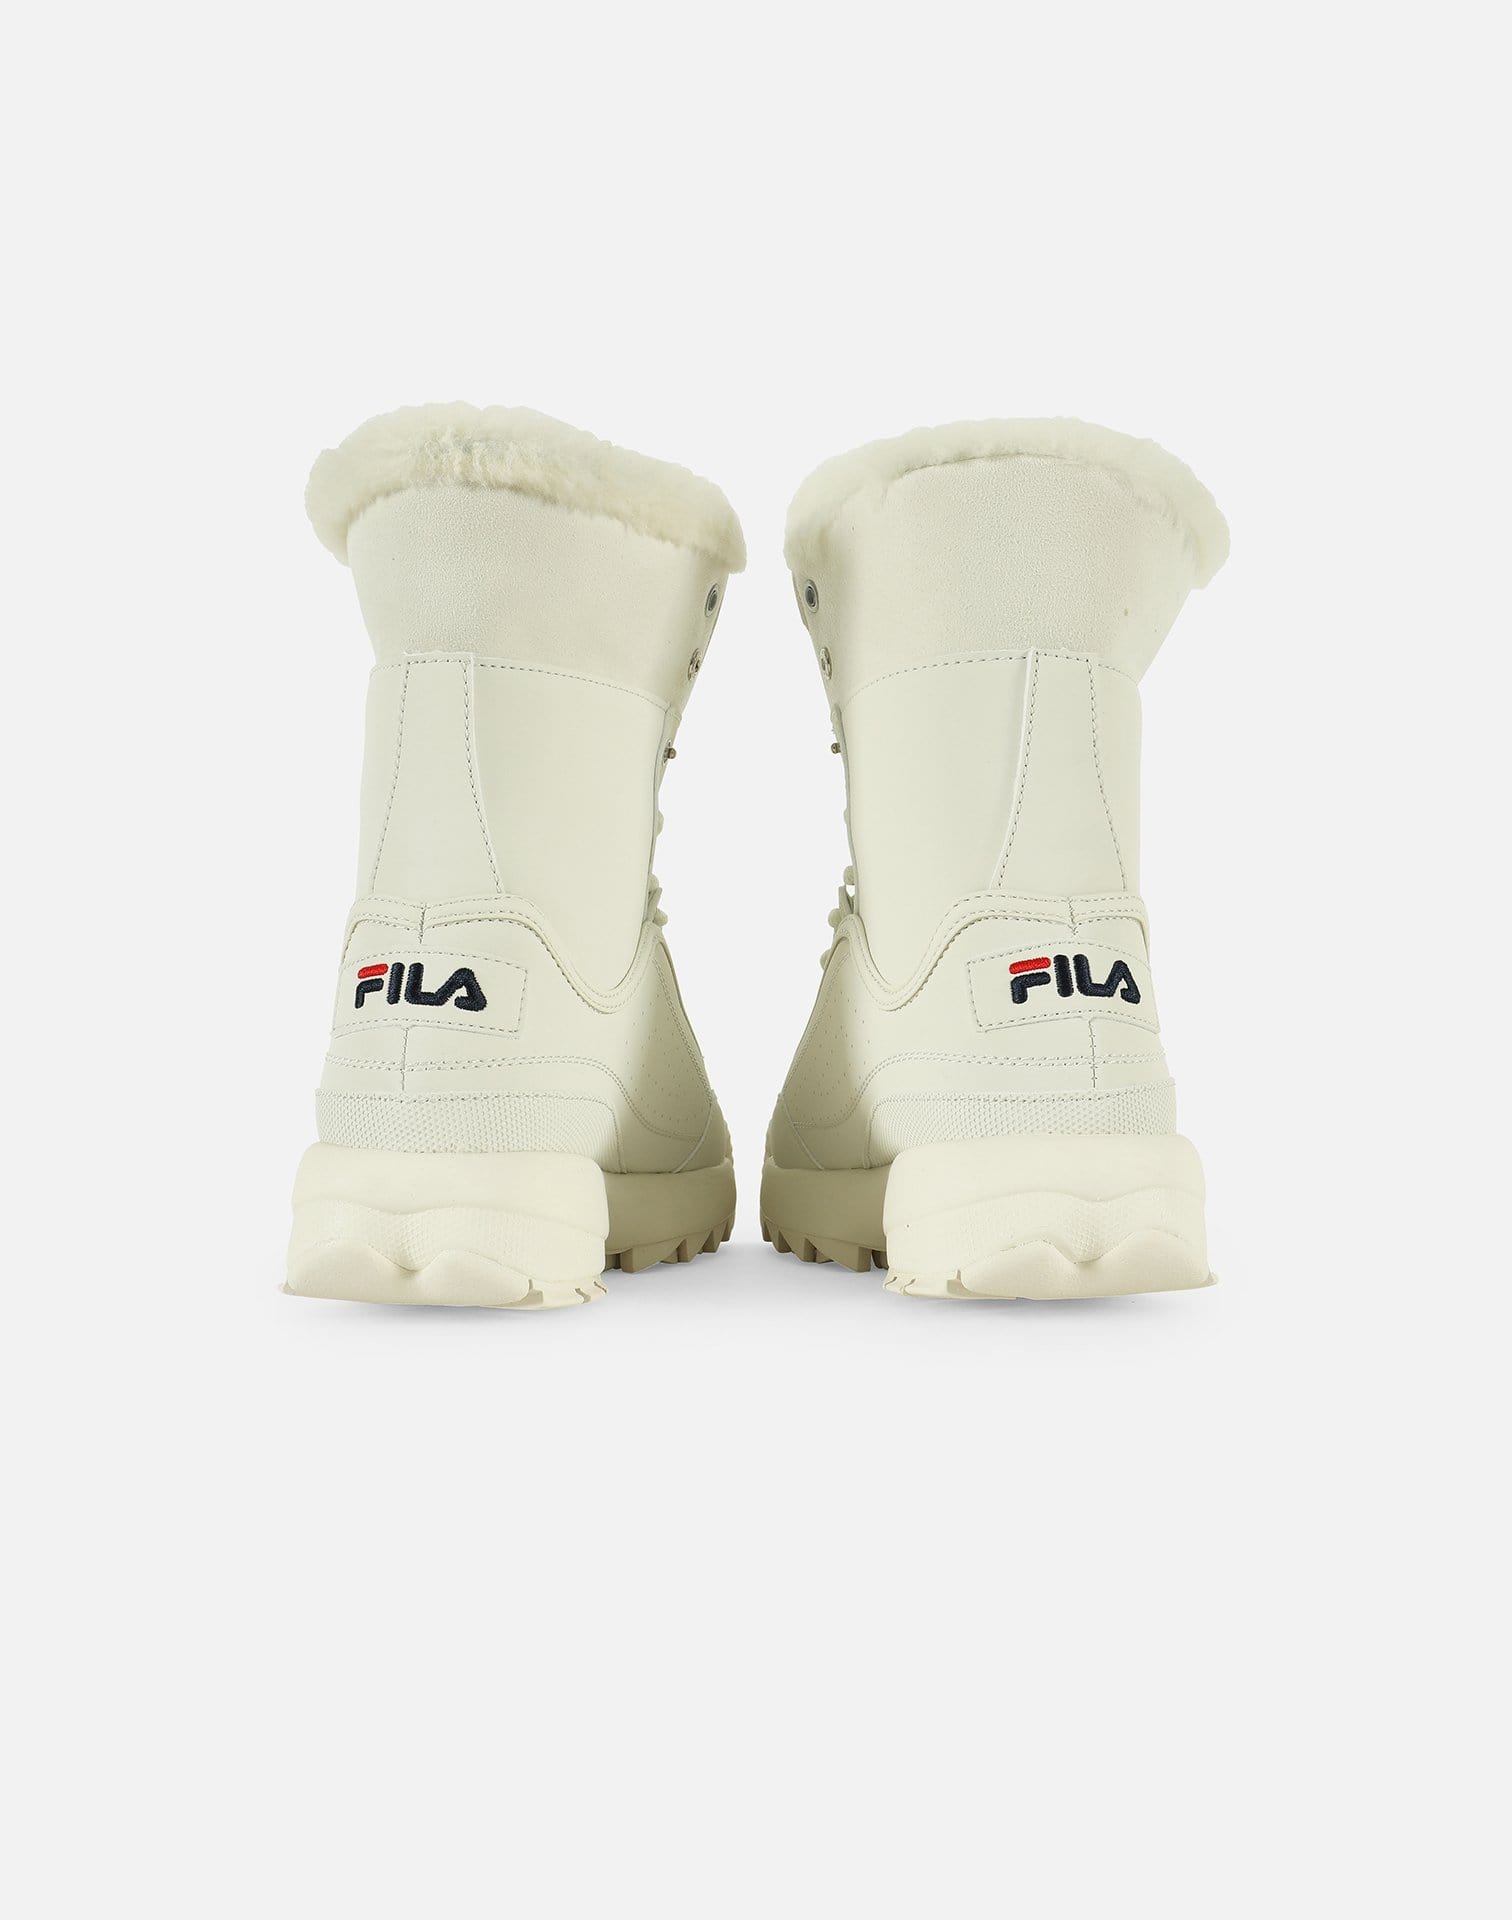 FILA Women's Disruptor Shearling Boots